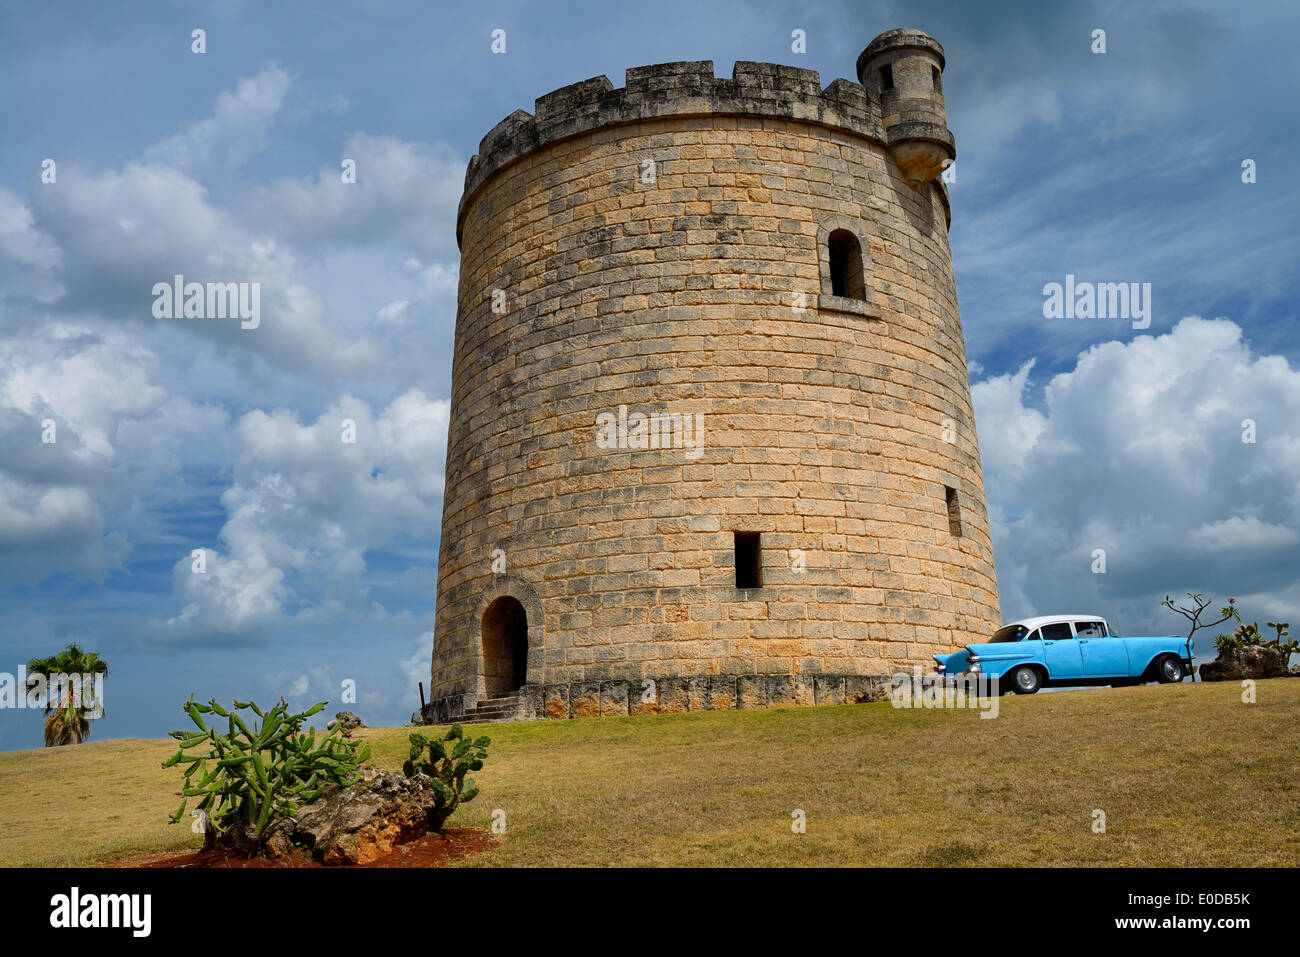 Castillo de Piedra atalaya ocultando una torre de agua en Varadero, en Cuba, con el clásico coche Chevy azul Foto de stock